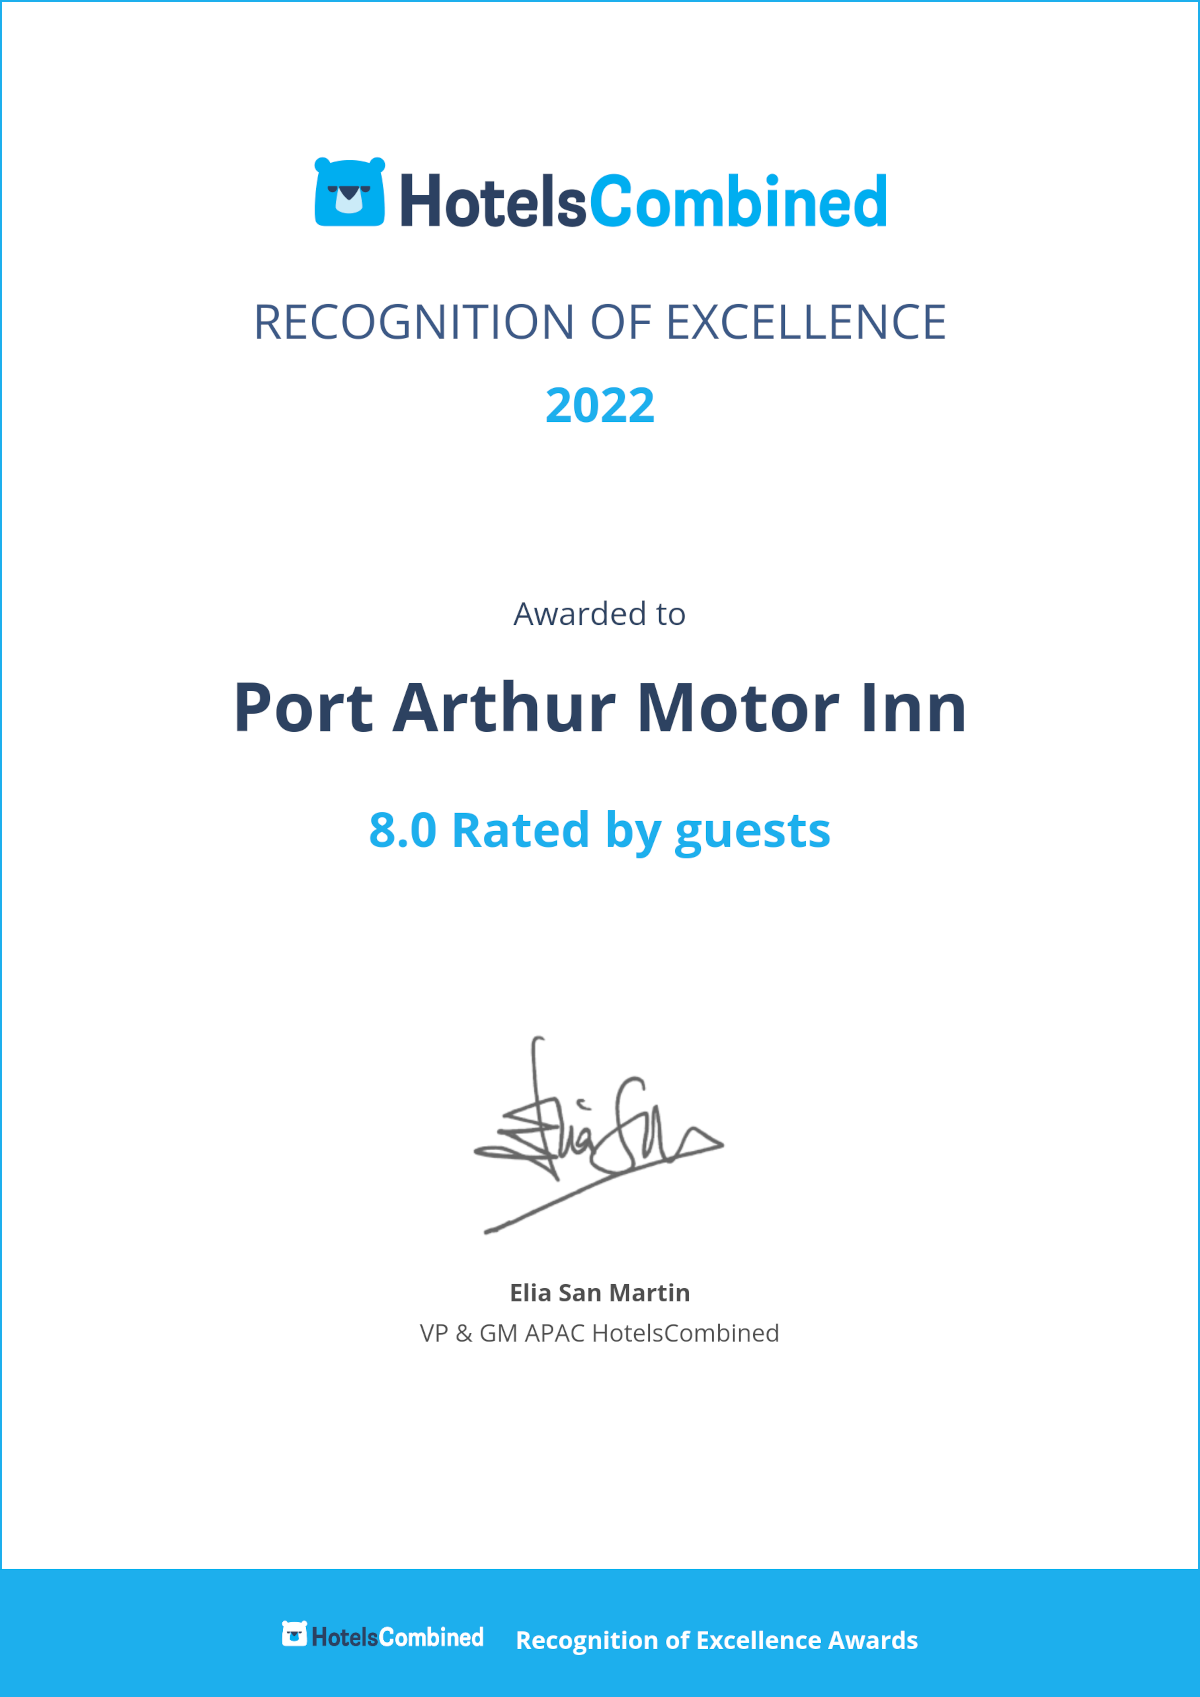 2022 Port Arthur Motor Inn Recognition of Excellence